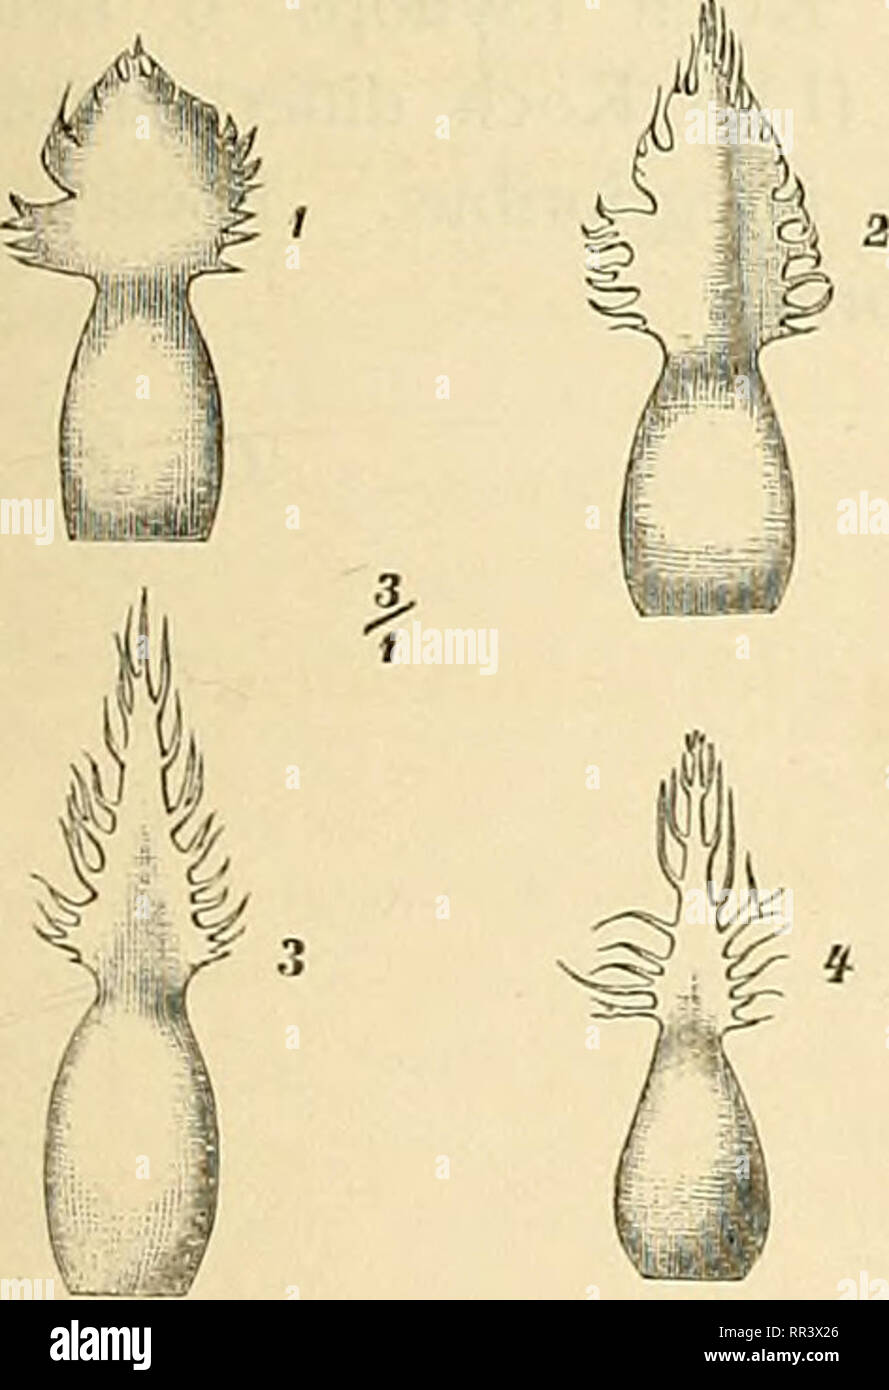 . Acta horti bergiani : Meddelanden från Kongl. Svenska Vetenskaps-Akademiens Trädgård Bergielund. Botany. WITTROCK &amp; O. JUEL. CATALOGUS IIORTI BOTANICI BERGIANI. 57 Praeterea exstat quidam 5. japoiücns Ait. a De Candolle (1. c, pars 6, p. 363) citatus, nobis ignotus. Denique ad Tussilaginem japonicam L., quse est Senecio Kampferi DC, hoc nomen transferre forsitan voluerit aliquis. Sed ut confusio nimis molesta evitetur, nomen illud plane rejici necesse est. 0. J. Notula XIV. De Centaurea Jacea L. var. lacera Koch, Lange. Dum mense Augusto 188S botanicae artis causa in Gotlandia vcrsor, in Stock Photo